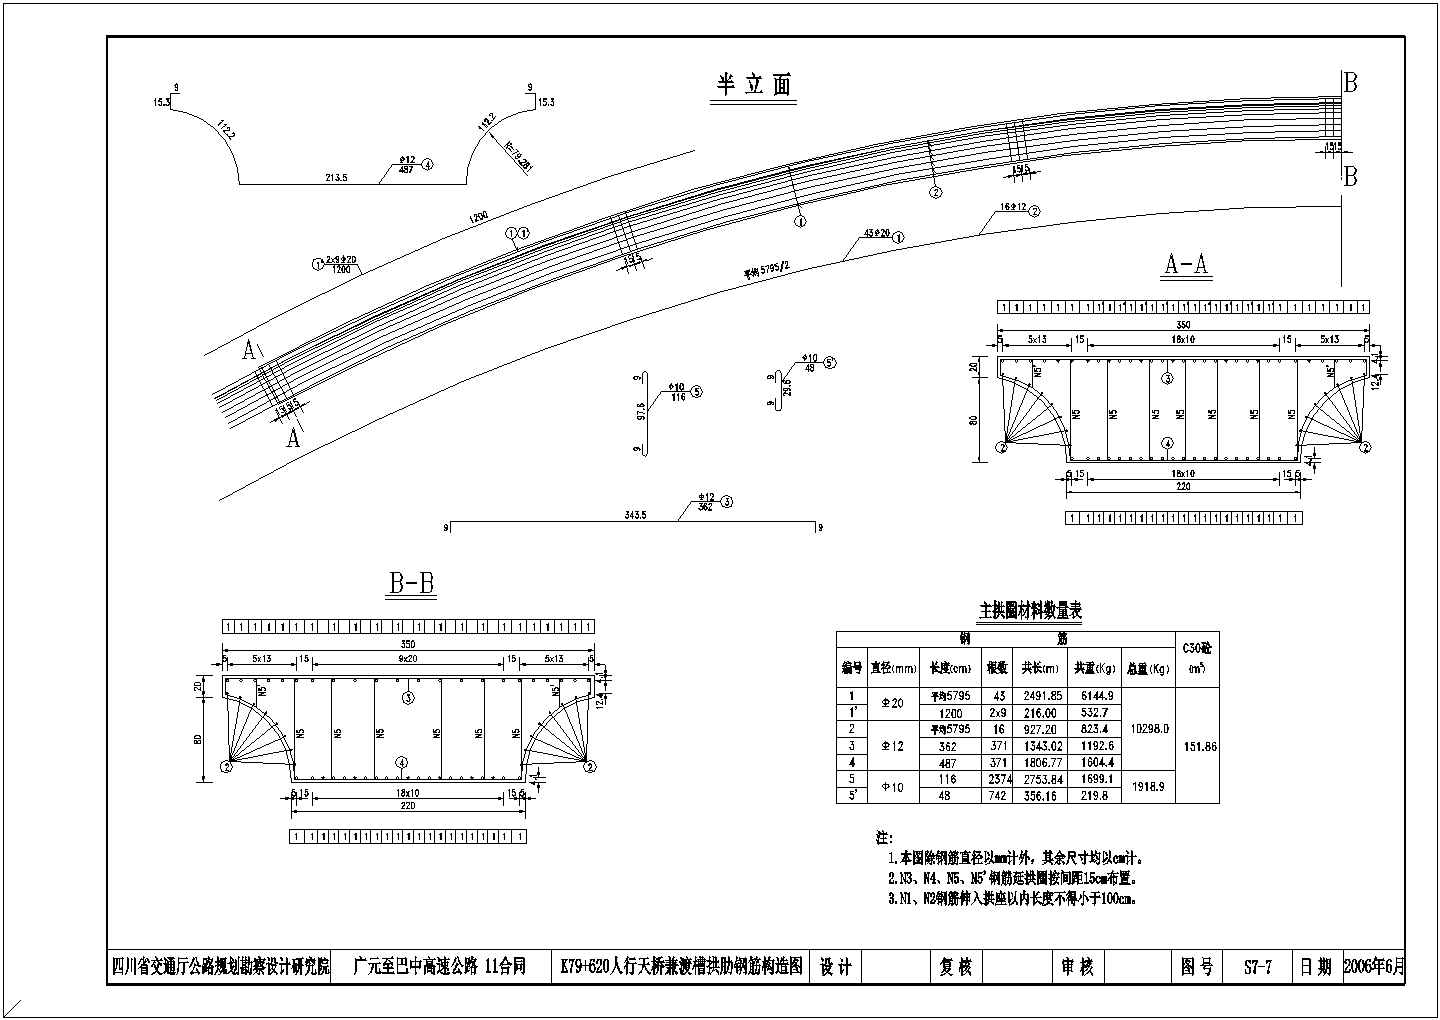 四川某高速公路一座50米拱式渡槽兼人行天桥施工图